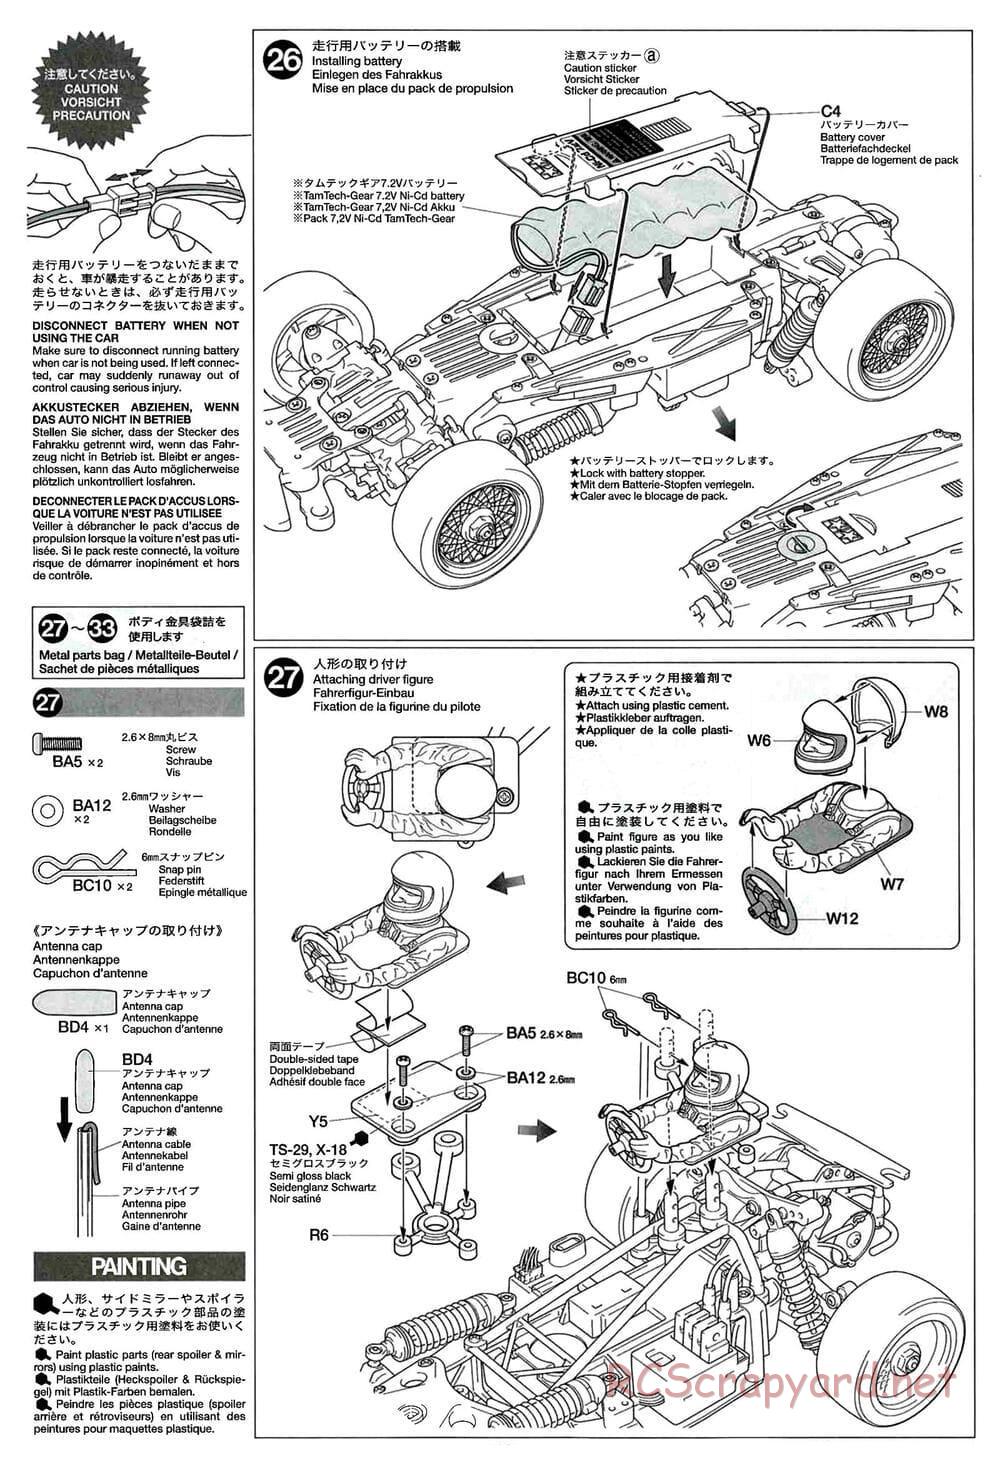 Tamiya - GT-01 Chassis - Manual - Page 16